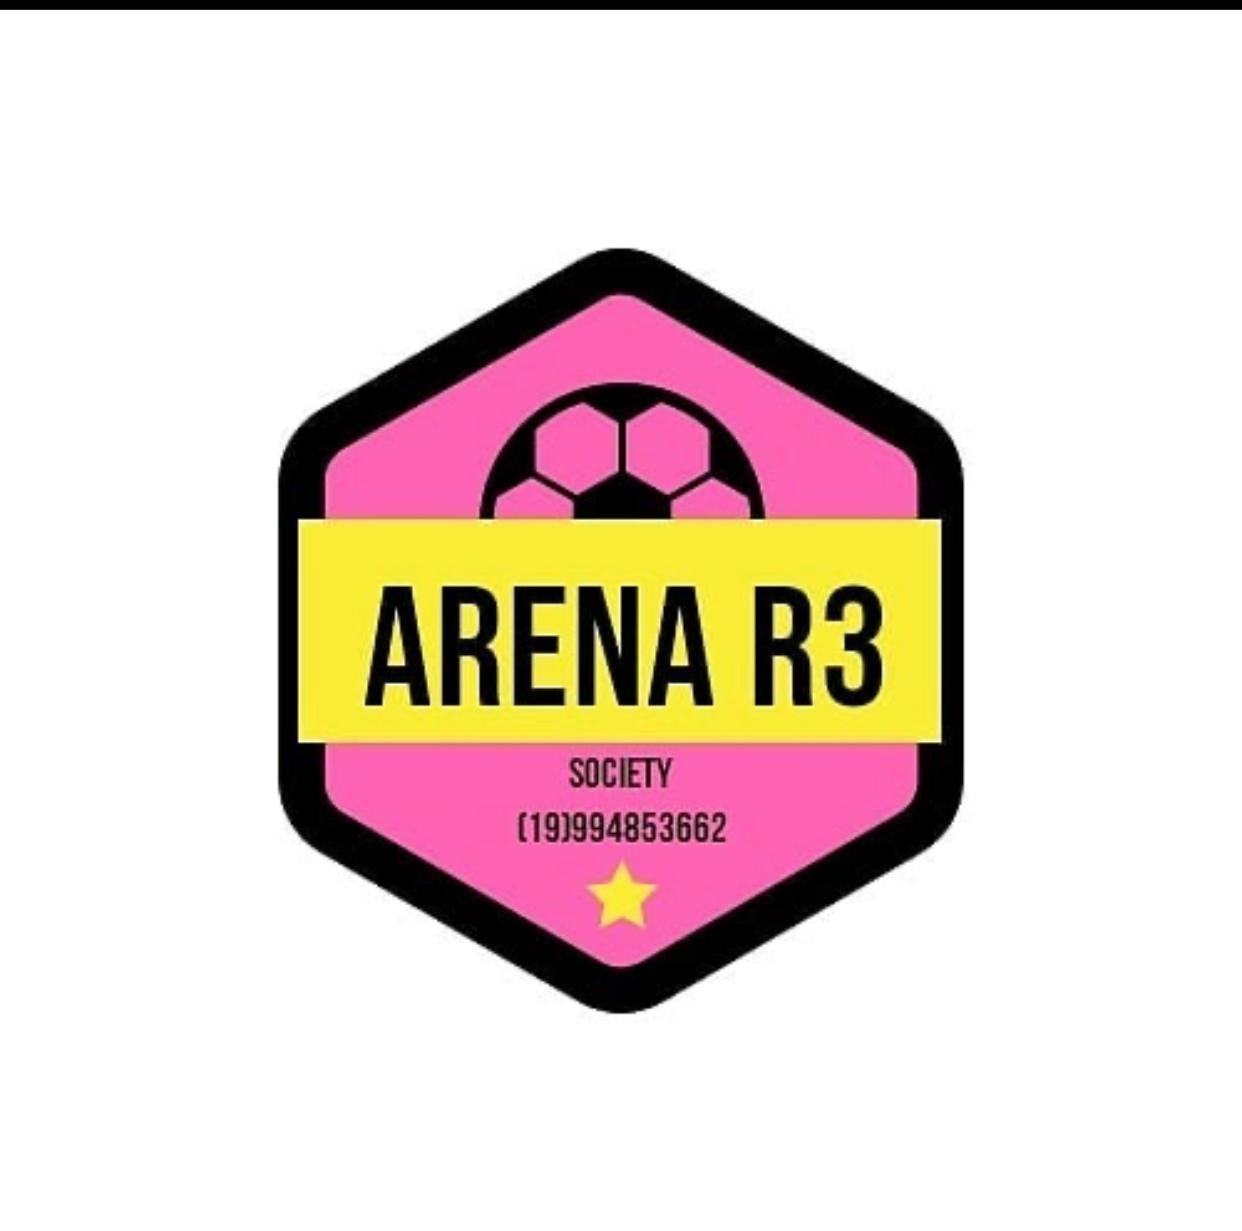 Arena R3 Society